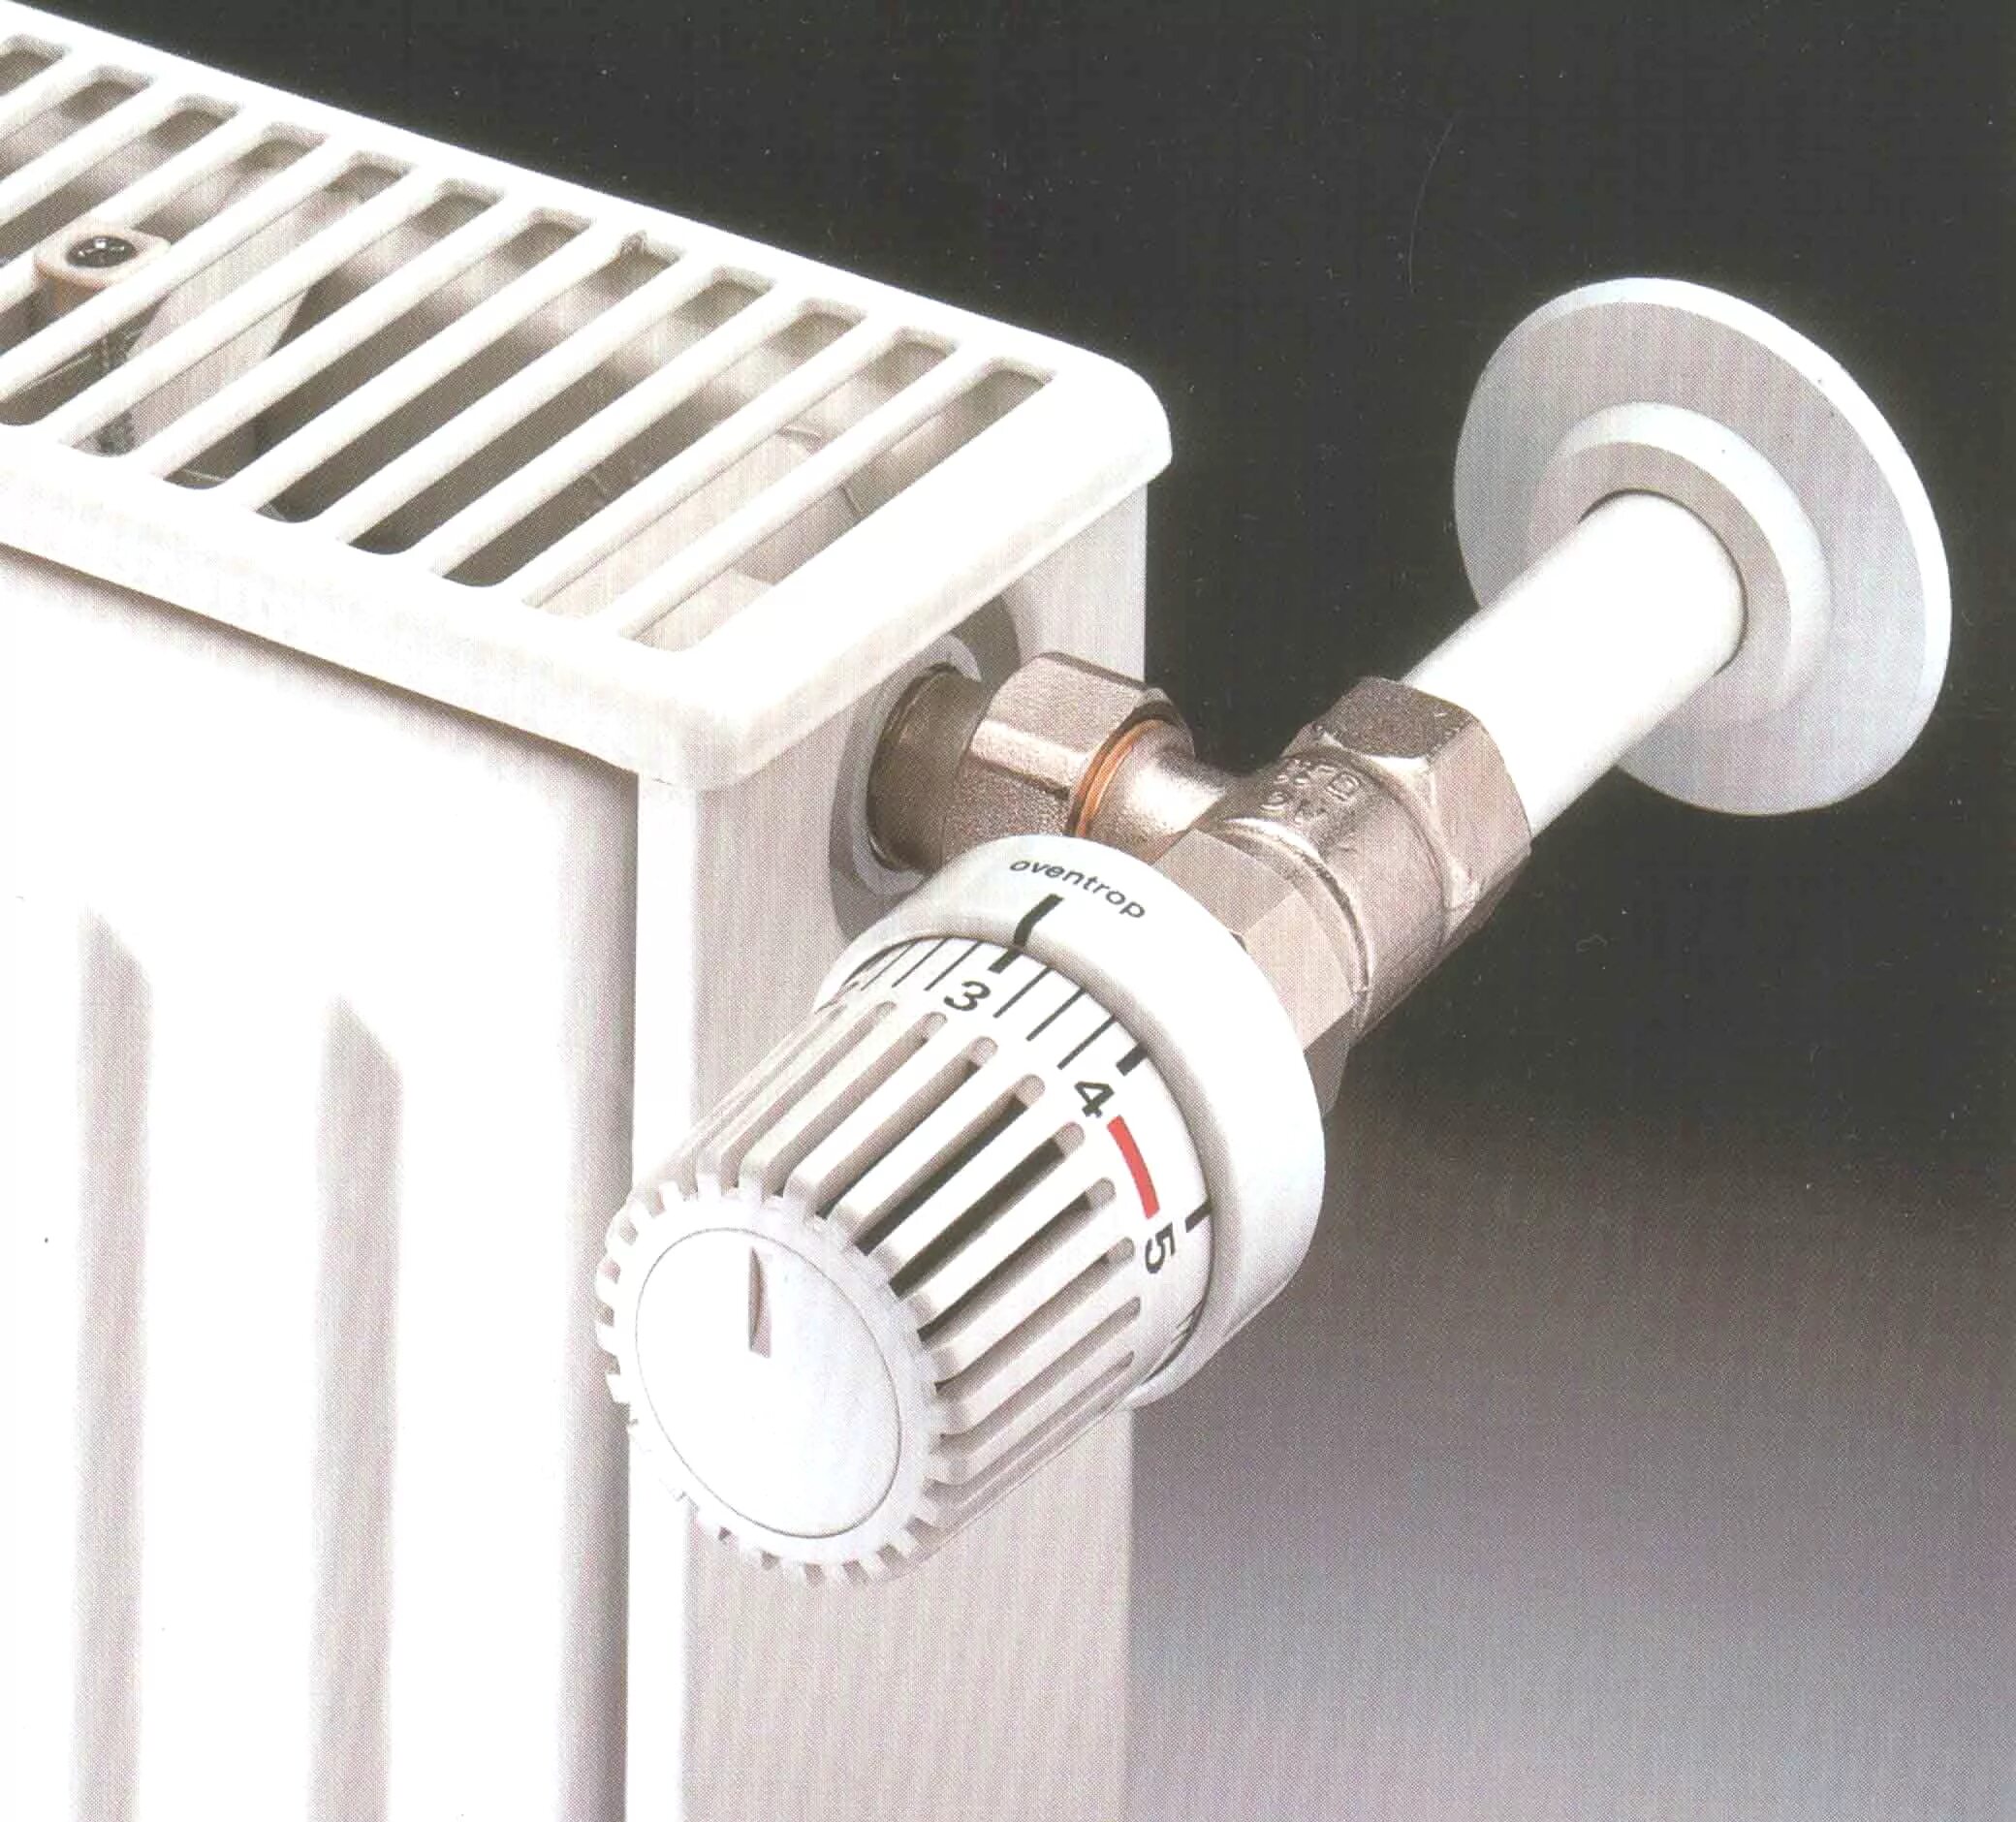 Регулятор тепла для батарей отопления Danfoss. Vrt регулятор радиатора отопления. Терморегулятор осевой для радиатора отопления. Терморегулятор радиаторный ∅20.